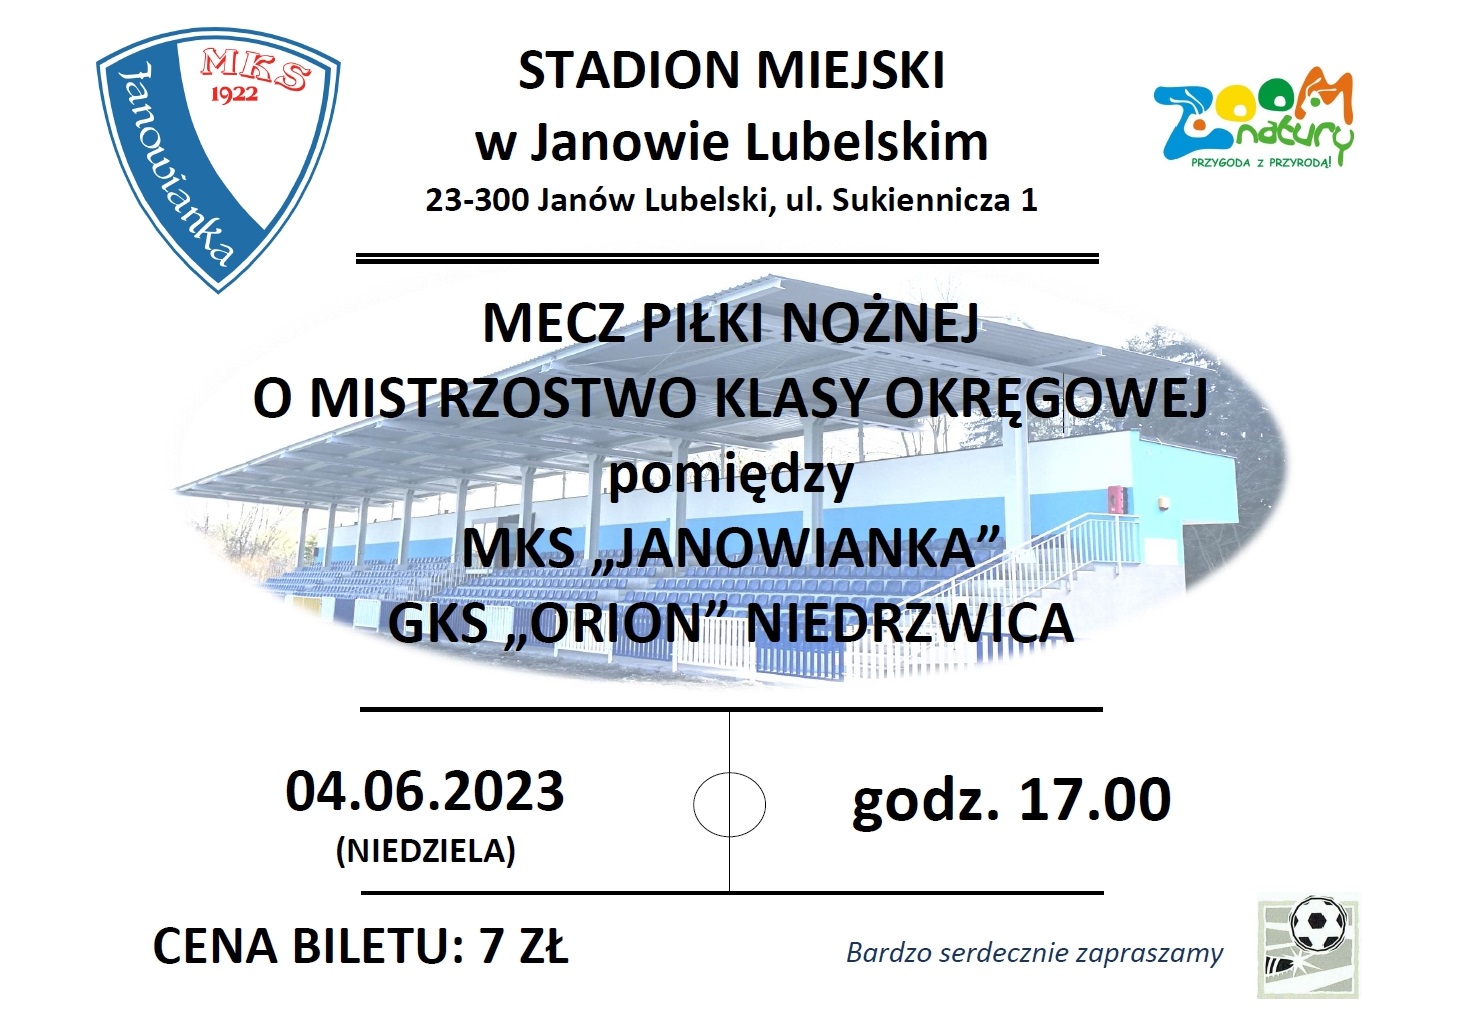 Plakat na mecz pomiędzy MKS Janowianka, a GKS "Orion" Niedrzwica który odbędzie się 4 czerwca 2023 roku w niedzielę o godzinie 17:00 na Stadionie Miejskim w Janowie Lubelskim przy ulicy Sukienniczej 1. Cena biletu 7 zł.